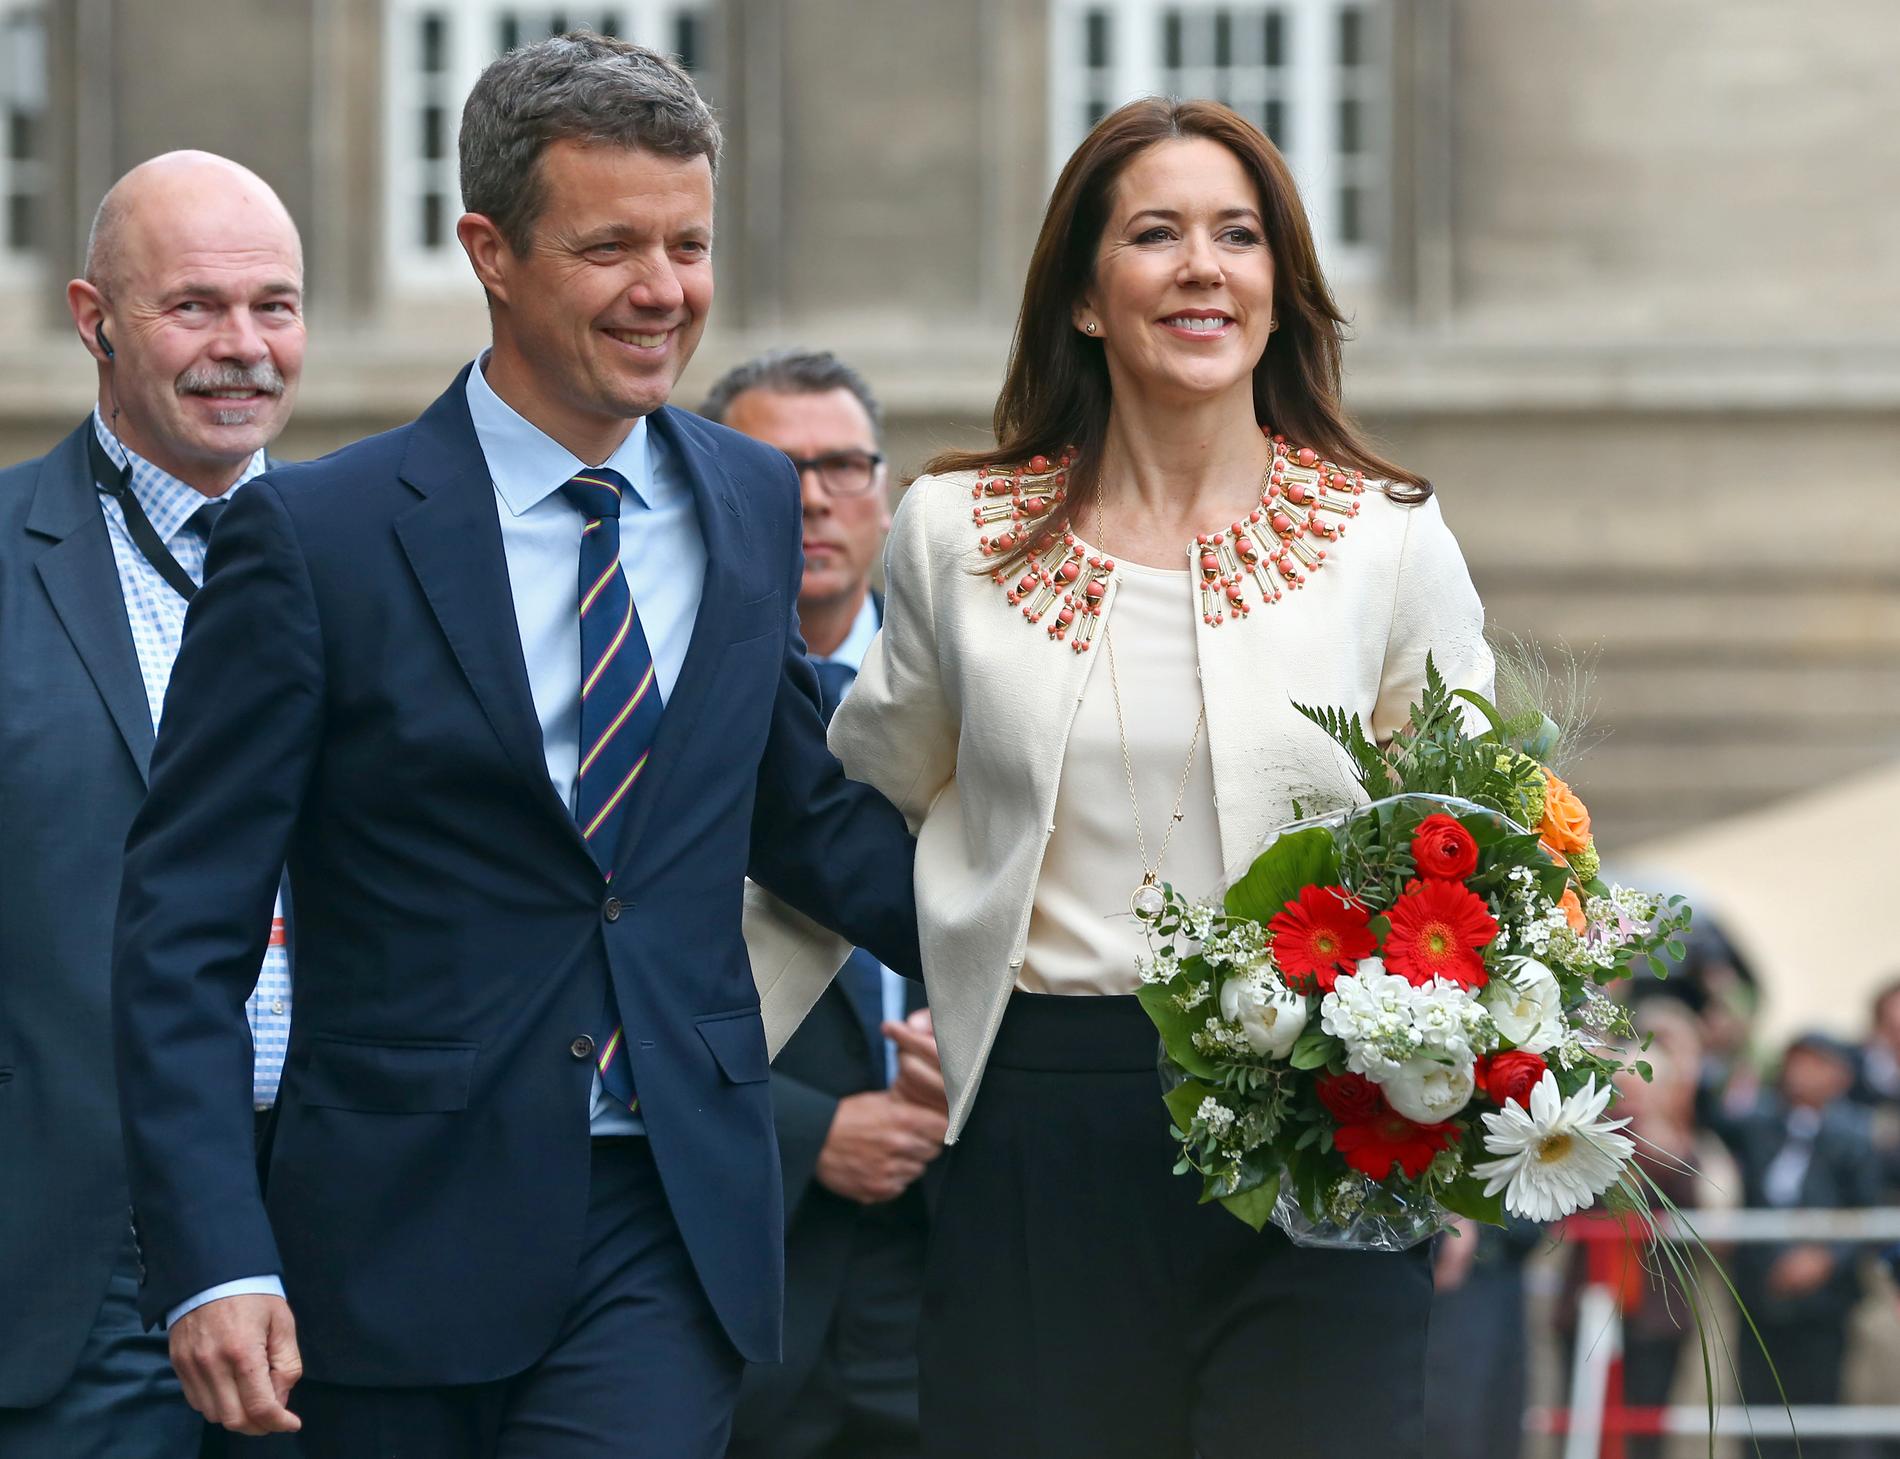 Kronprins Frederik av Danmark tillsammans med hustrun kronprinsessan Mary.